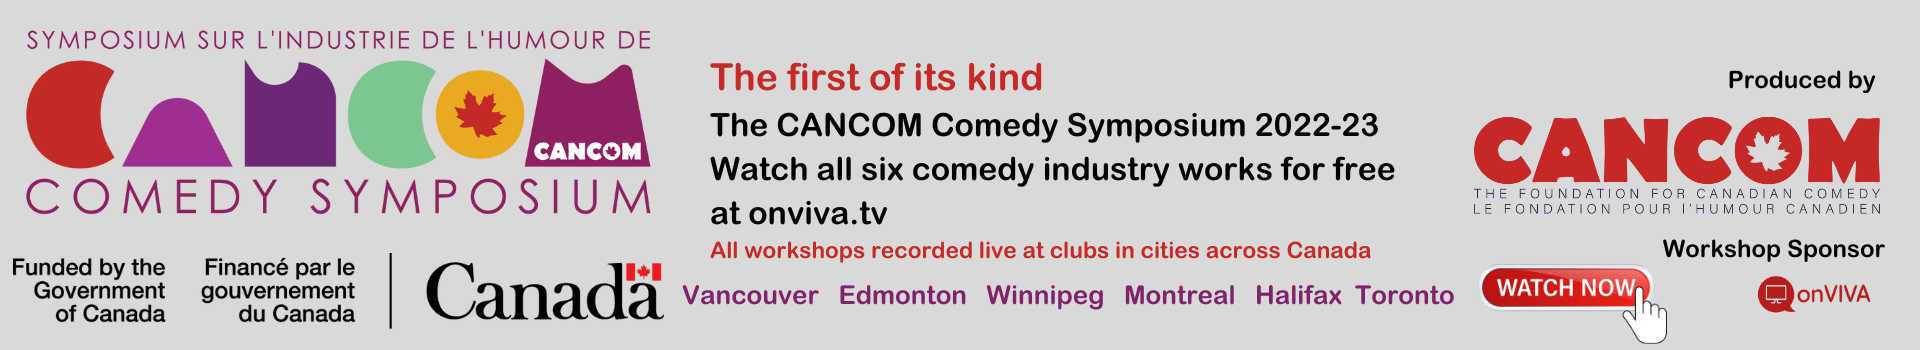 CANCOM Comedy Symposium Banner Link 350